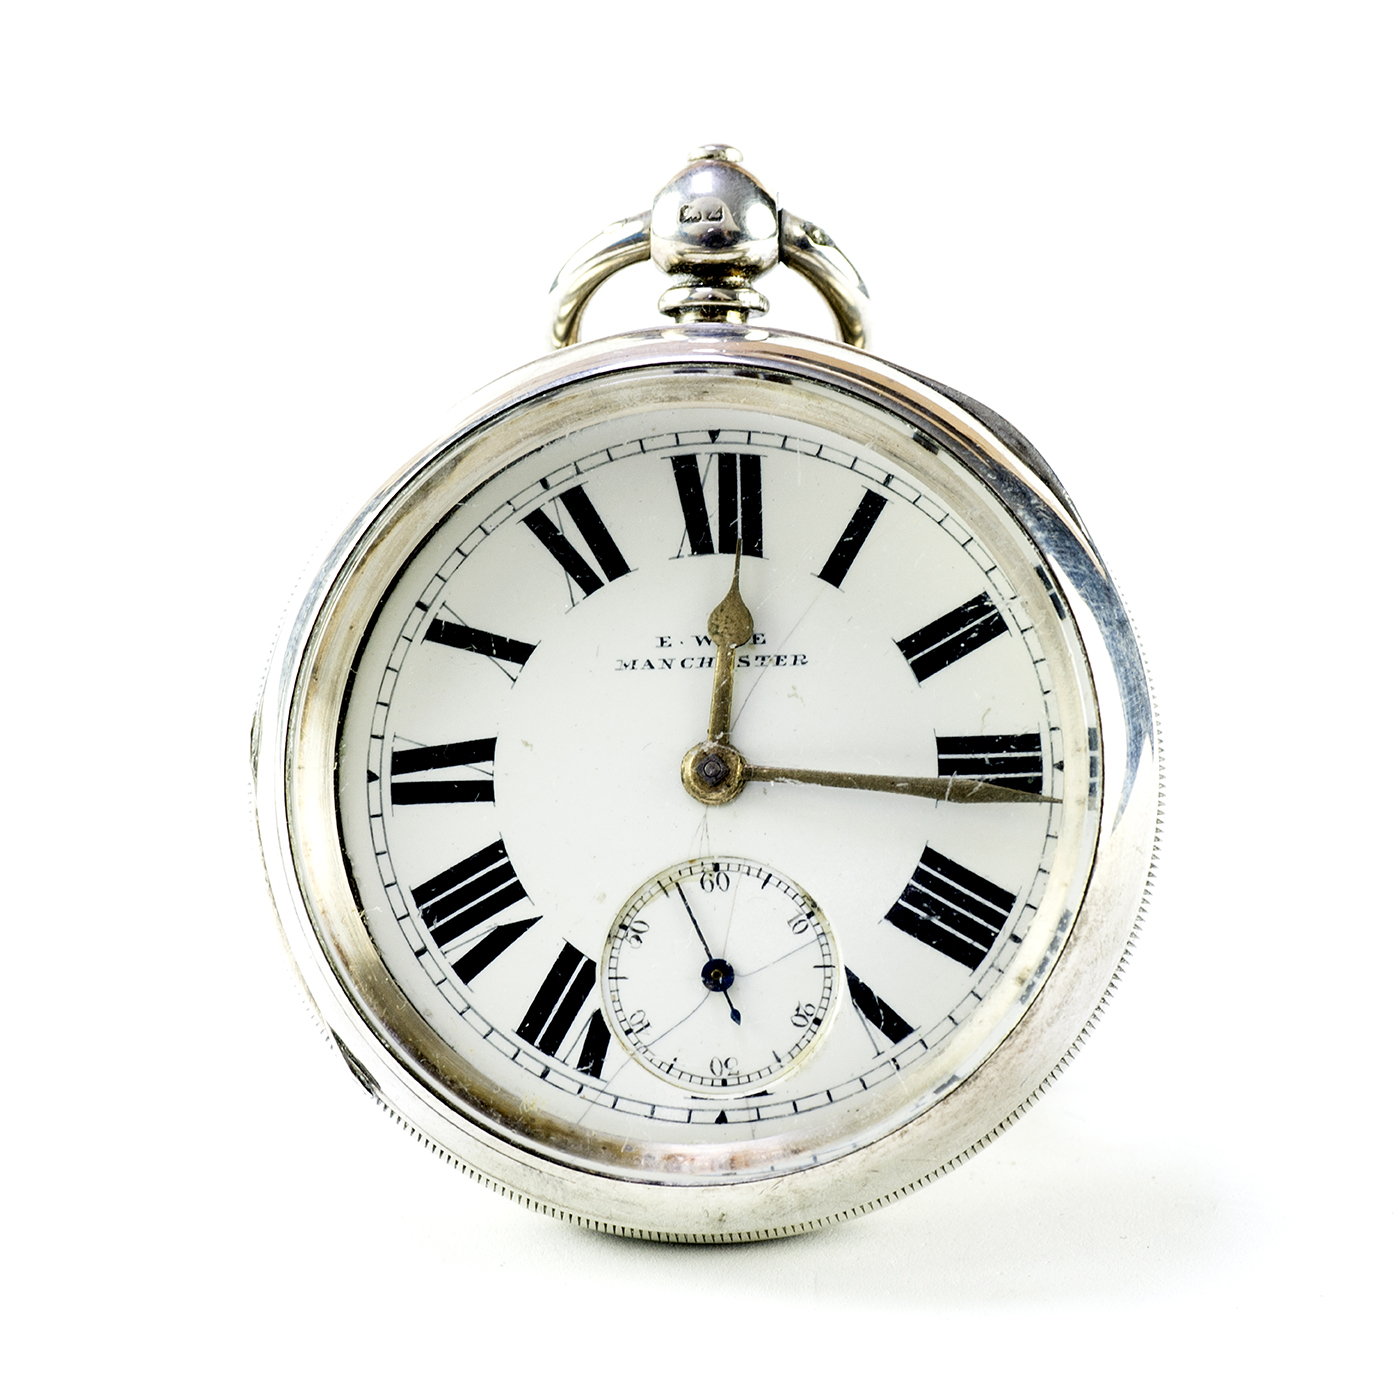 E.WISE (Machester). Reloj de Bolsillo, Lepine, Half Fusee. Birmingham, 1900.